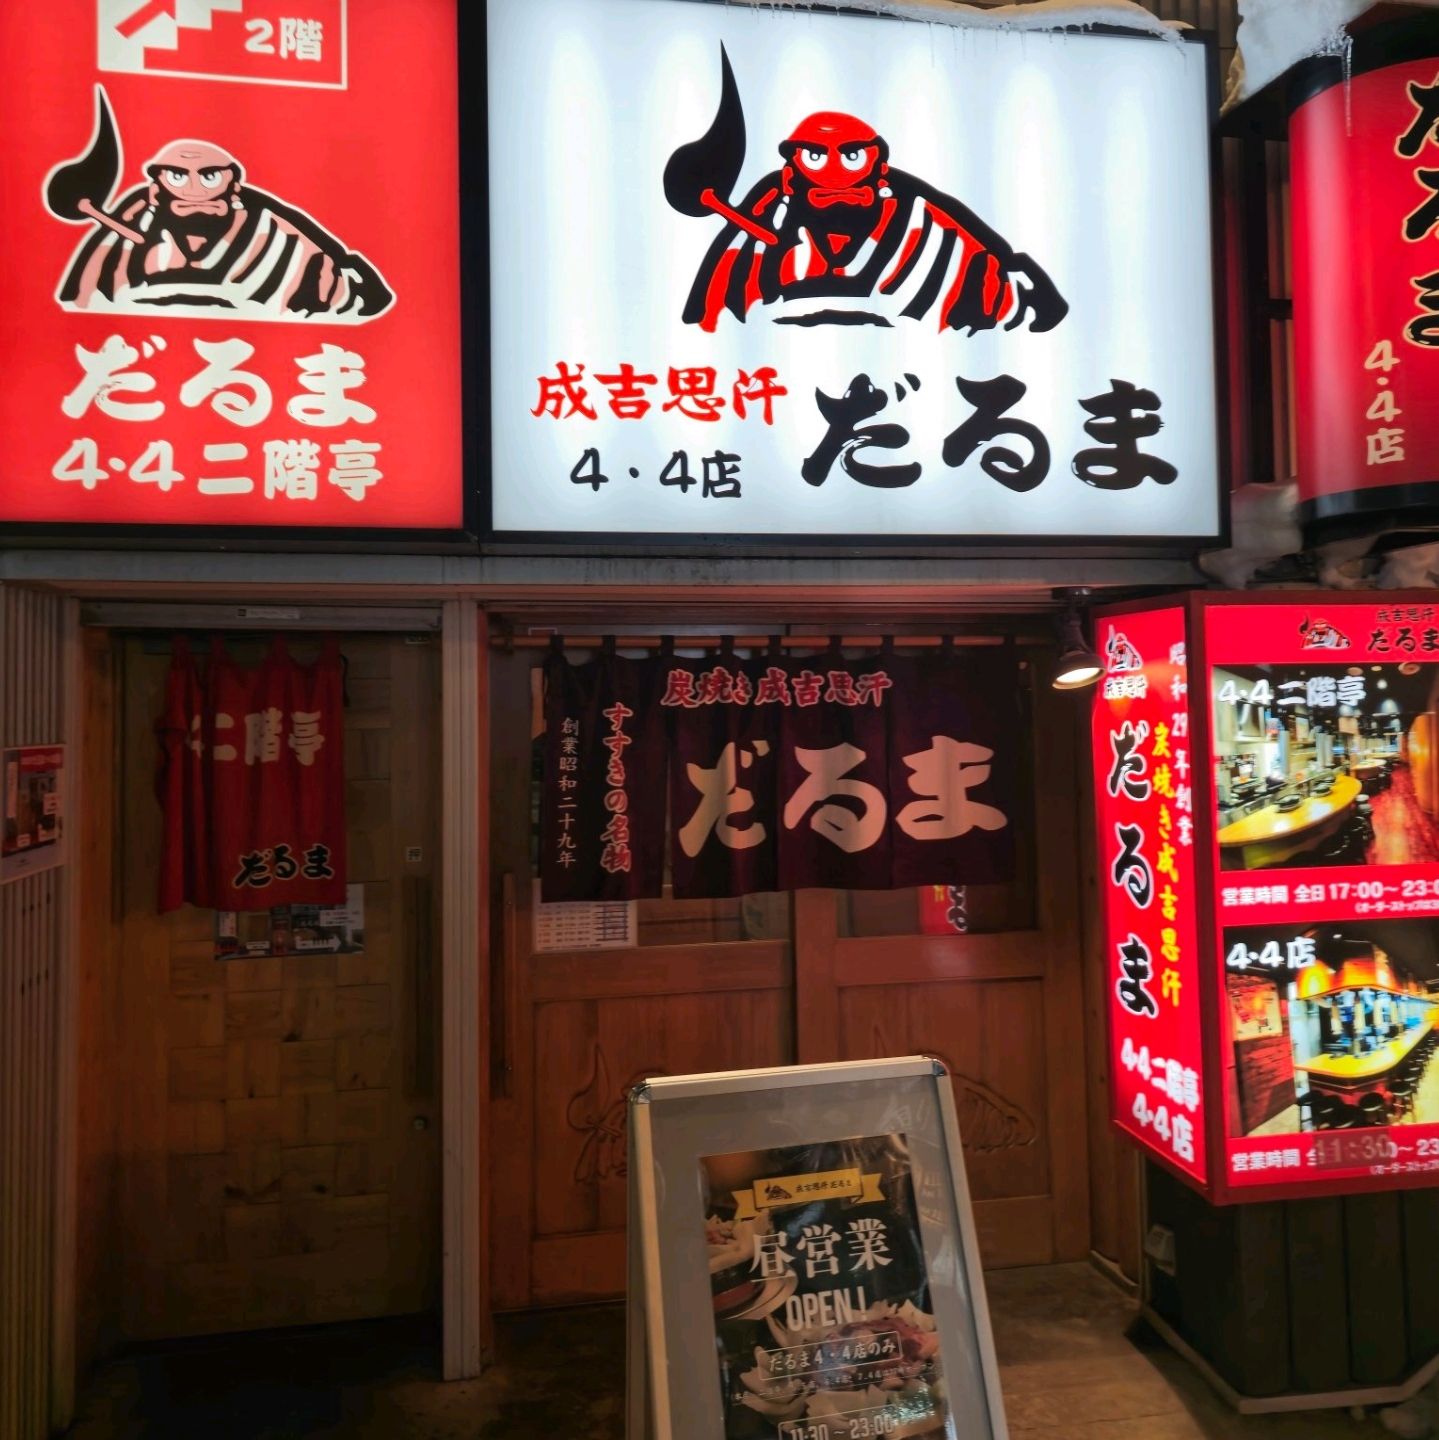 日本旅行札幌京畿道餐厅达鲁马4.4分店